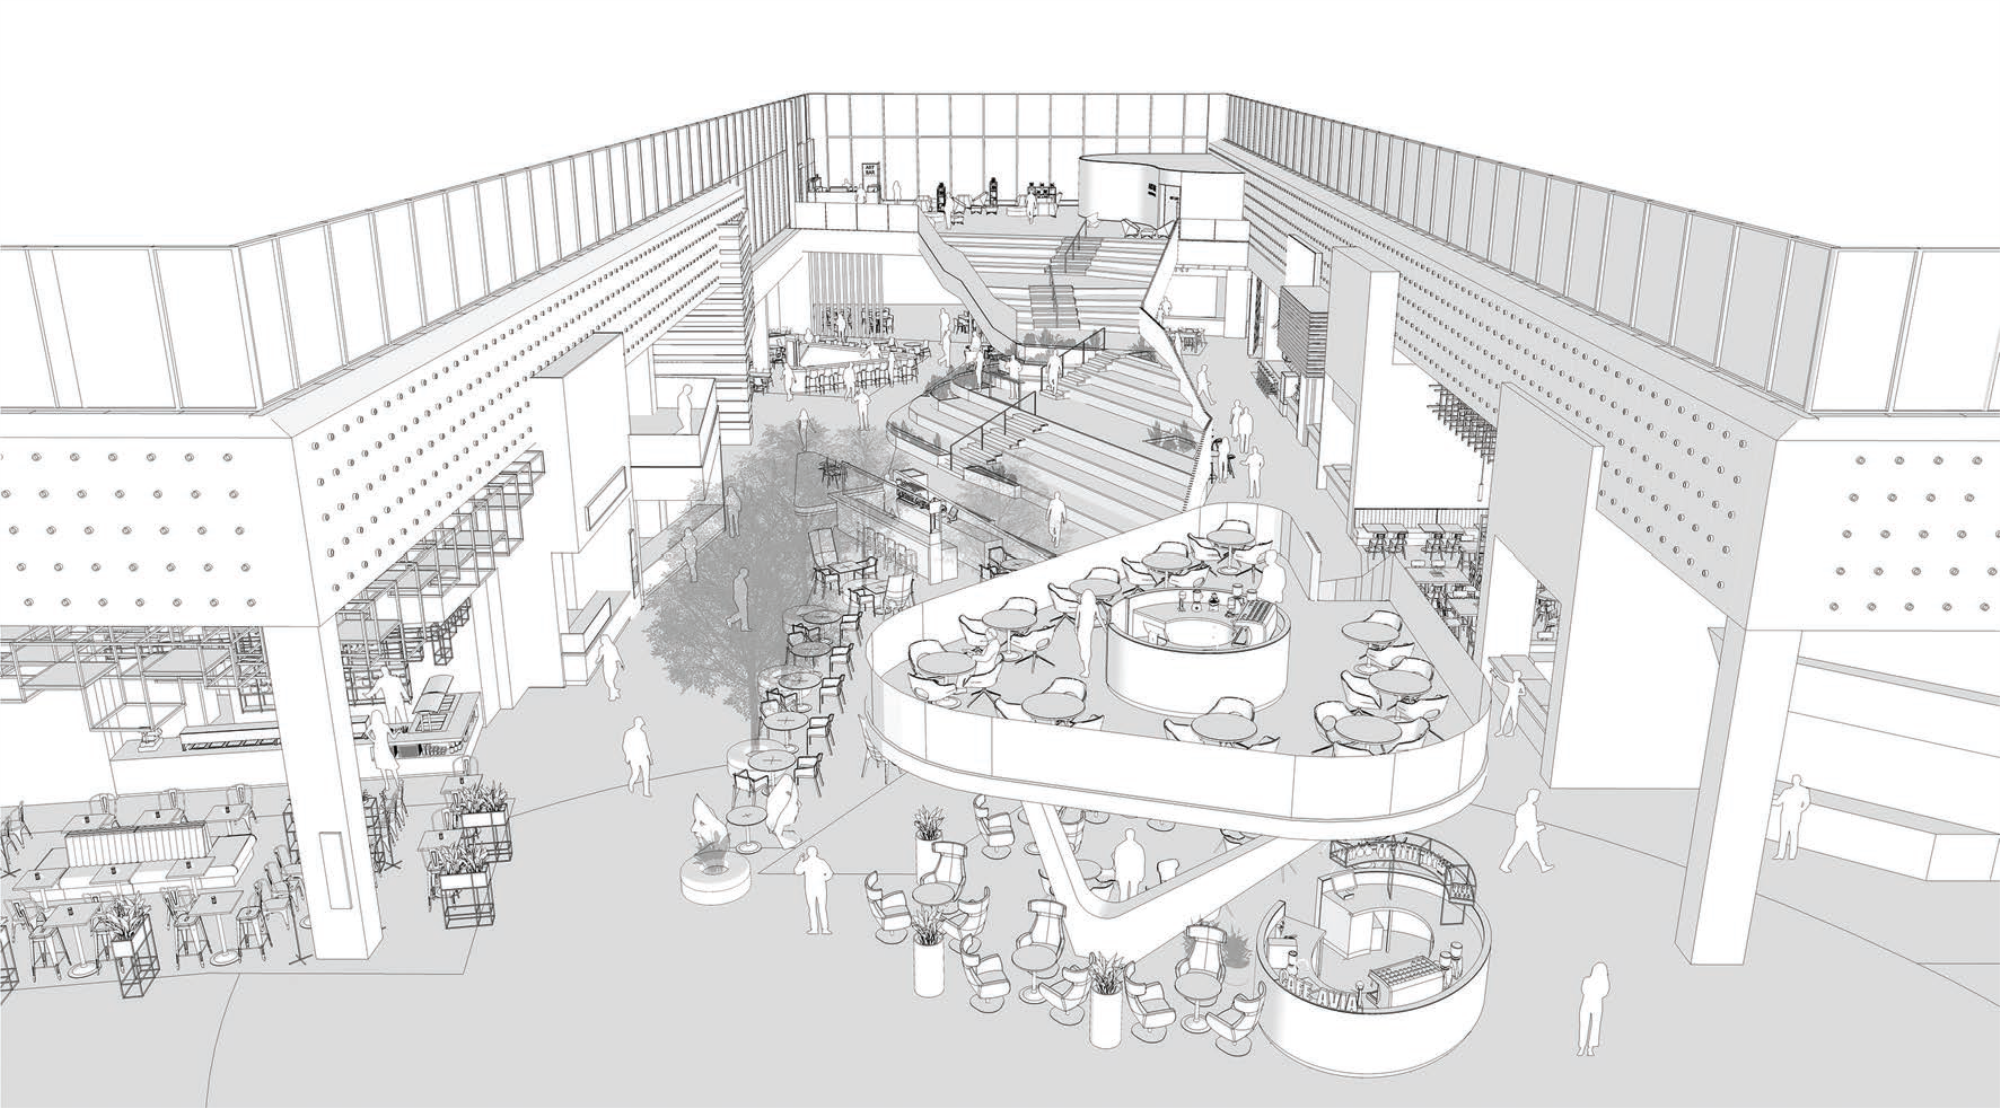 vizuálny návrh food courtu v obchodnom centre s detailom na jednotlivé tribúny